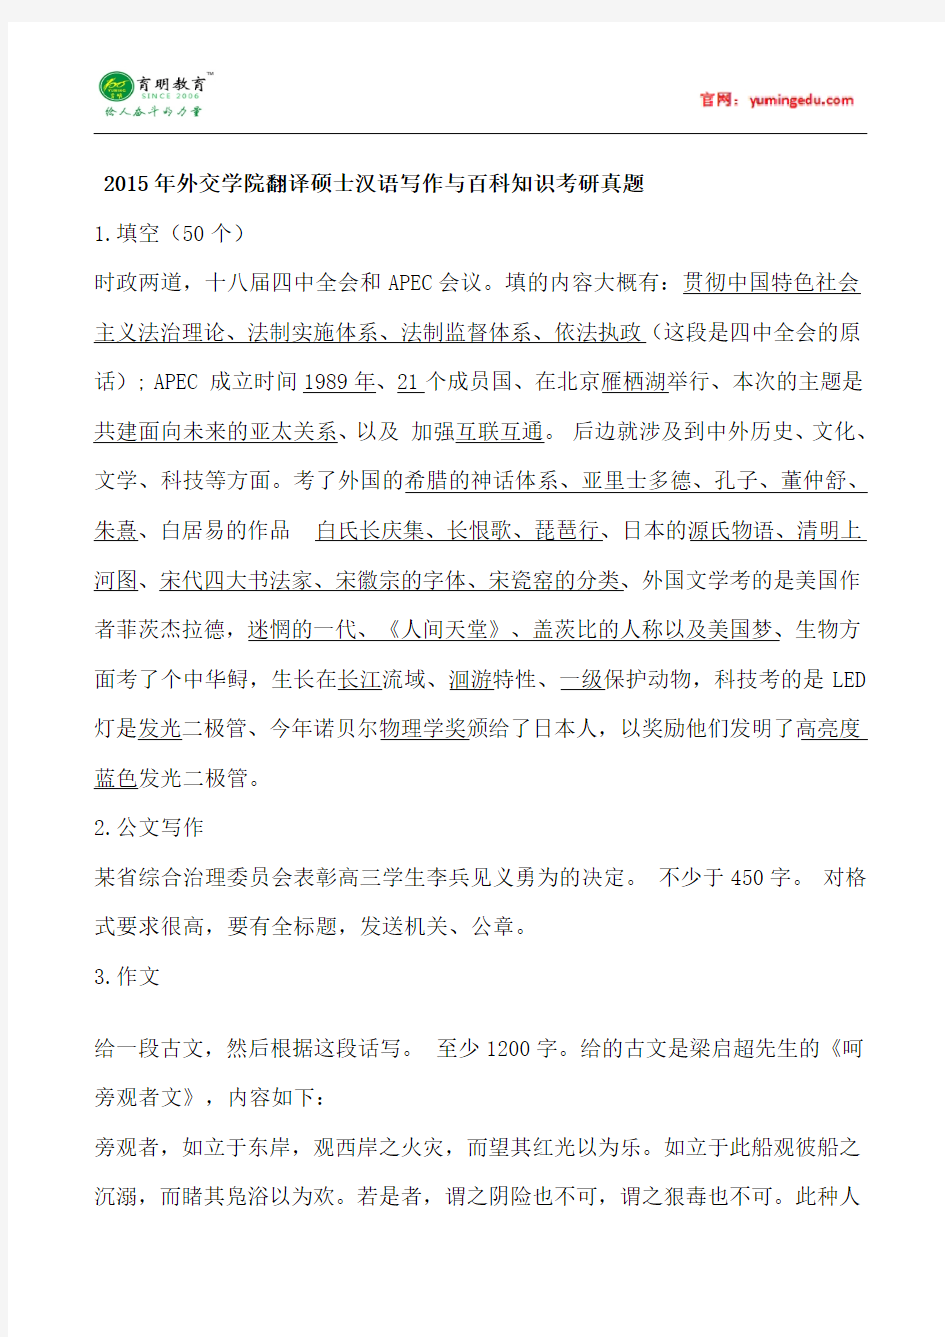 2015年外交学院翻译硕士汉语写作与百科知识考研真题,考研经验